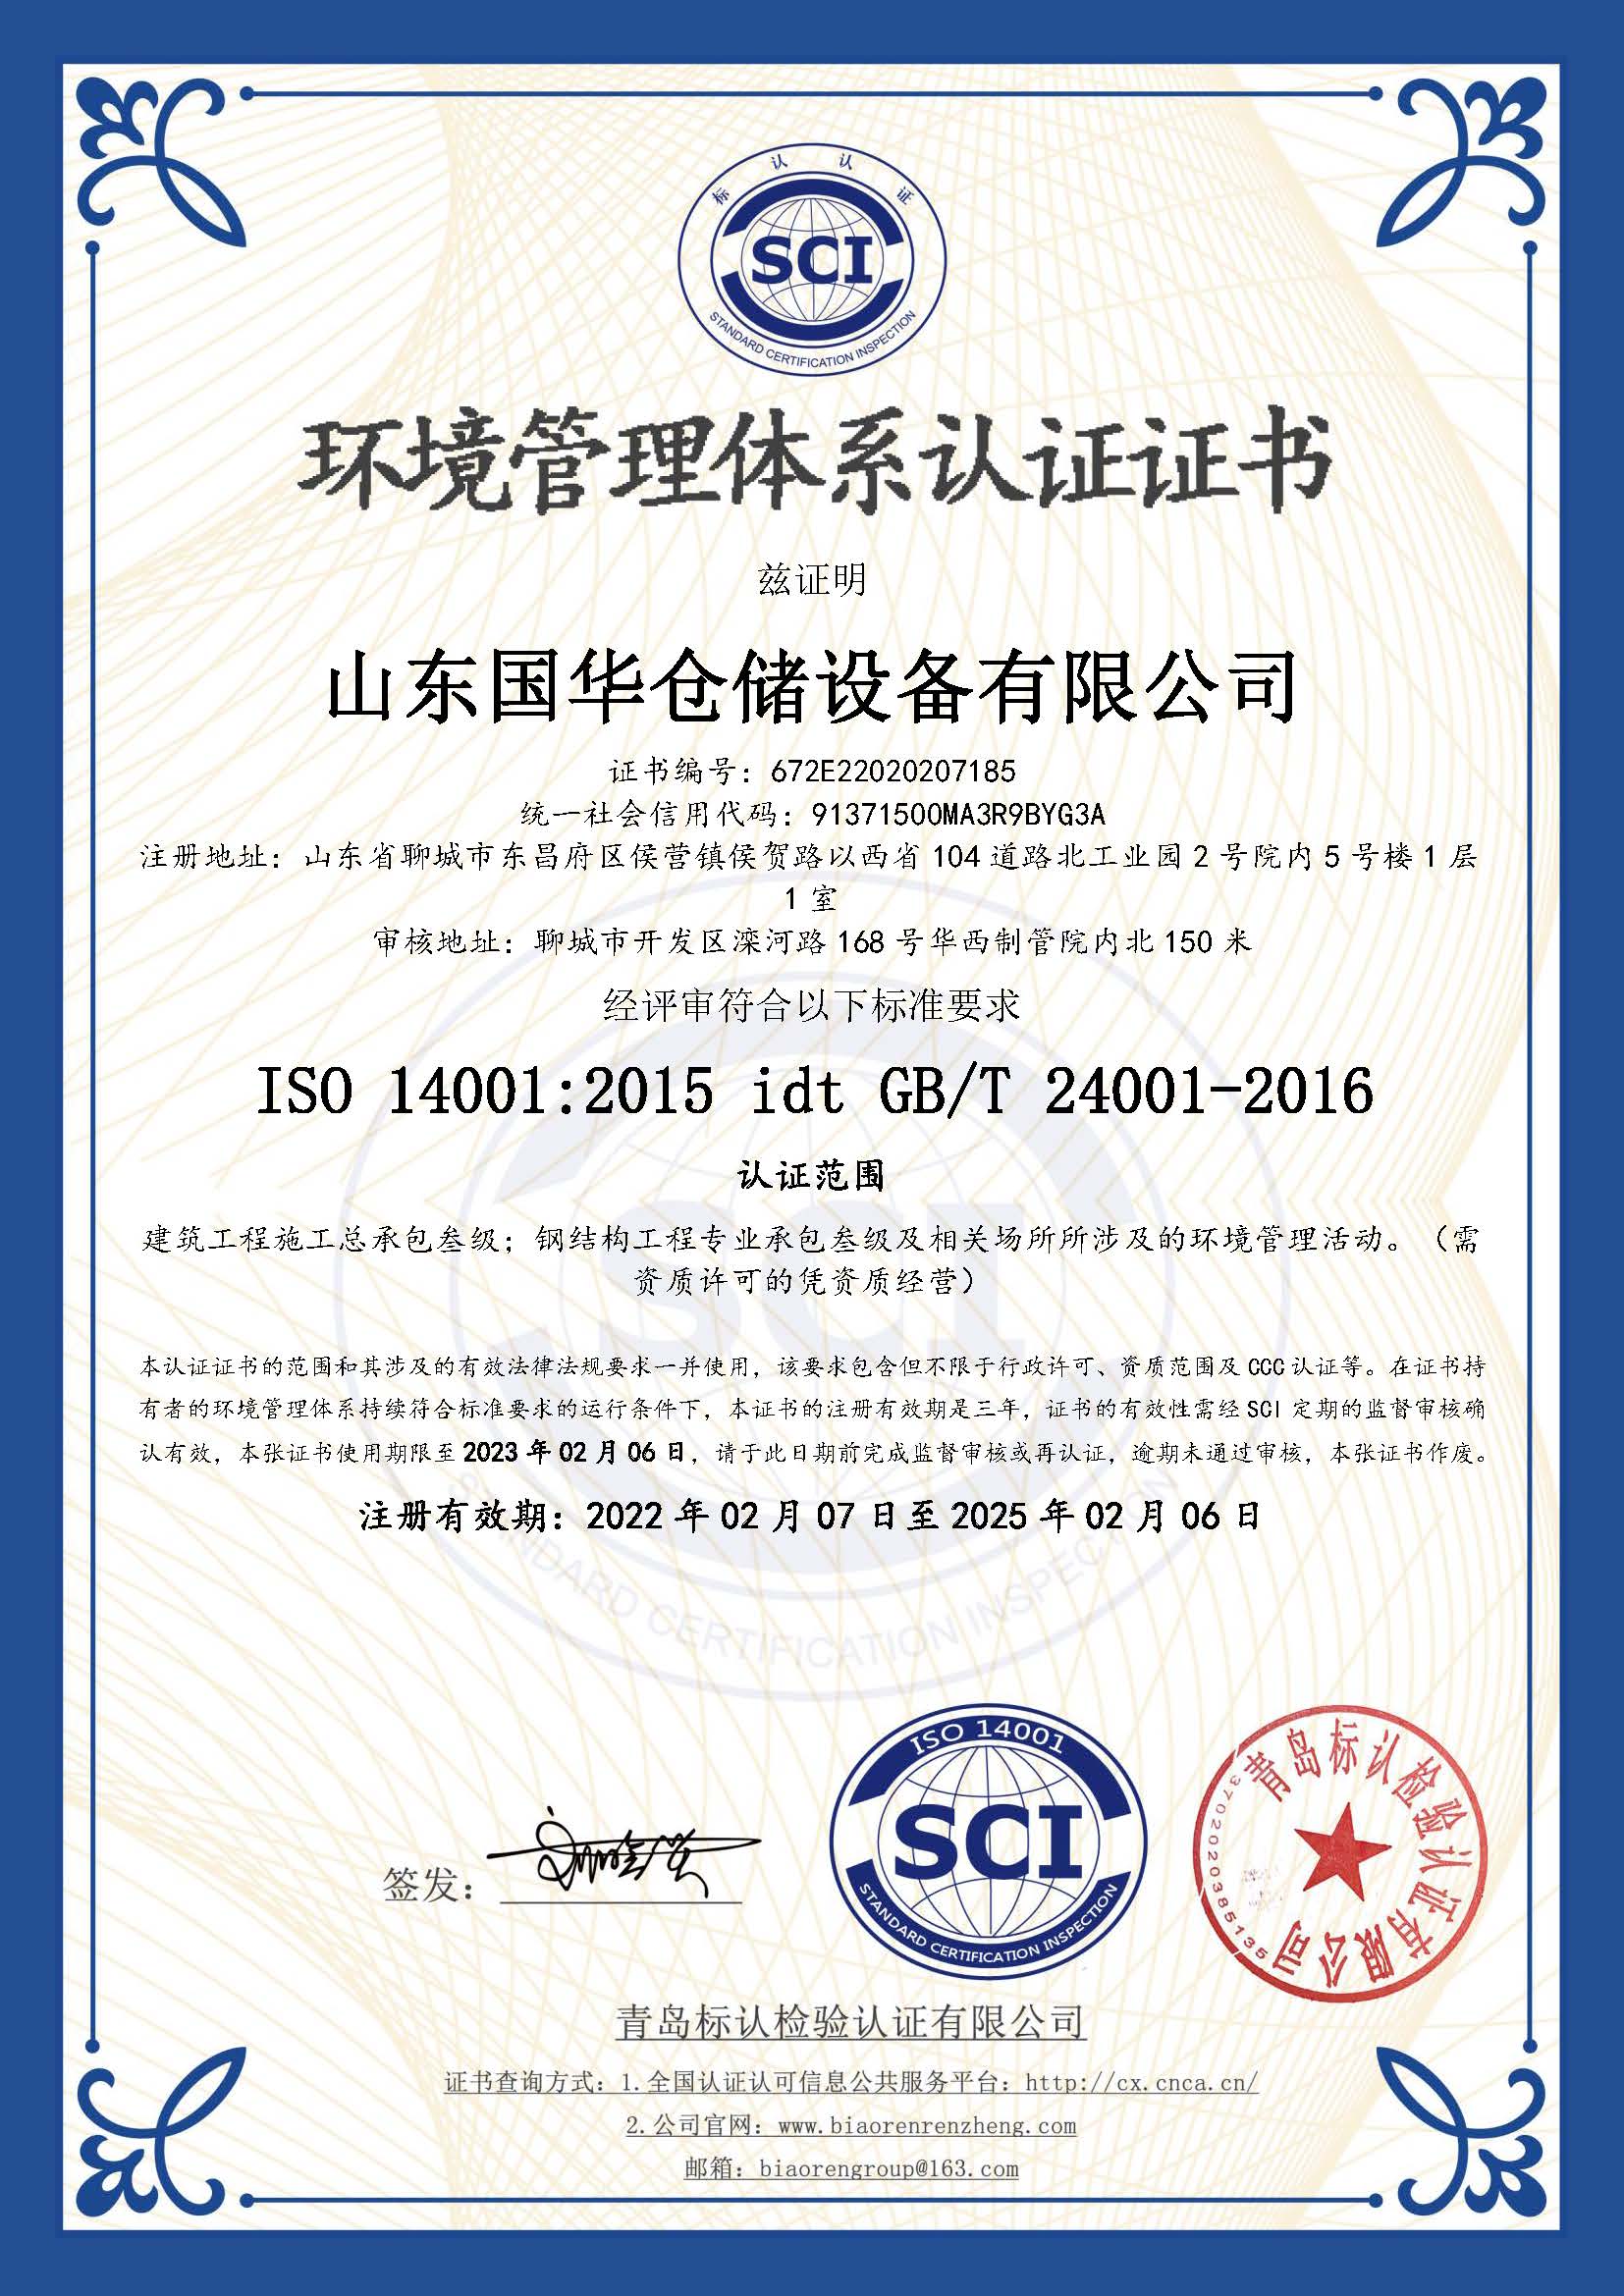 榆林钢板仓环境管理体系认证证书